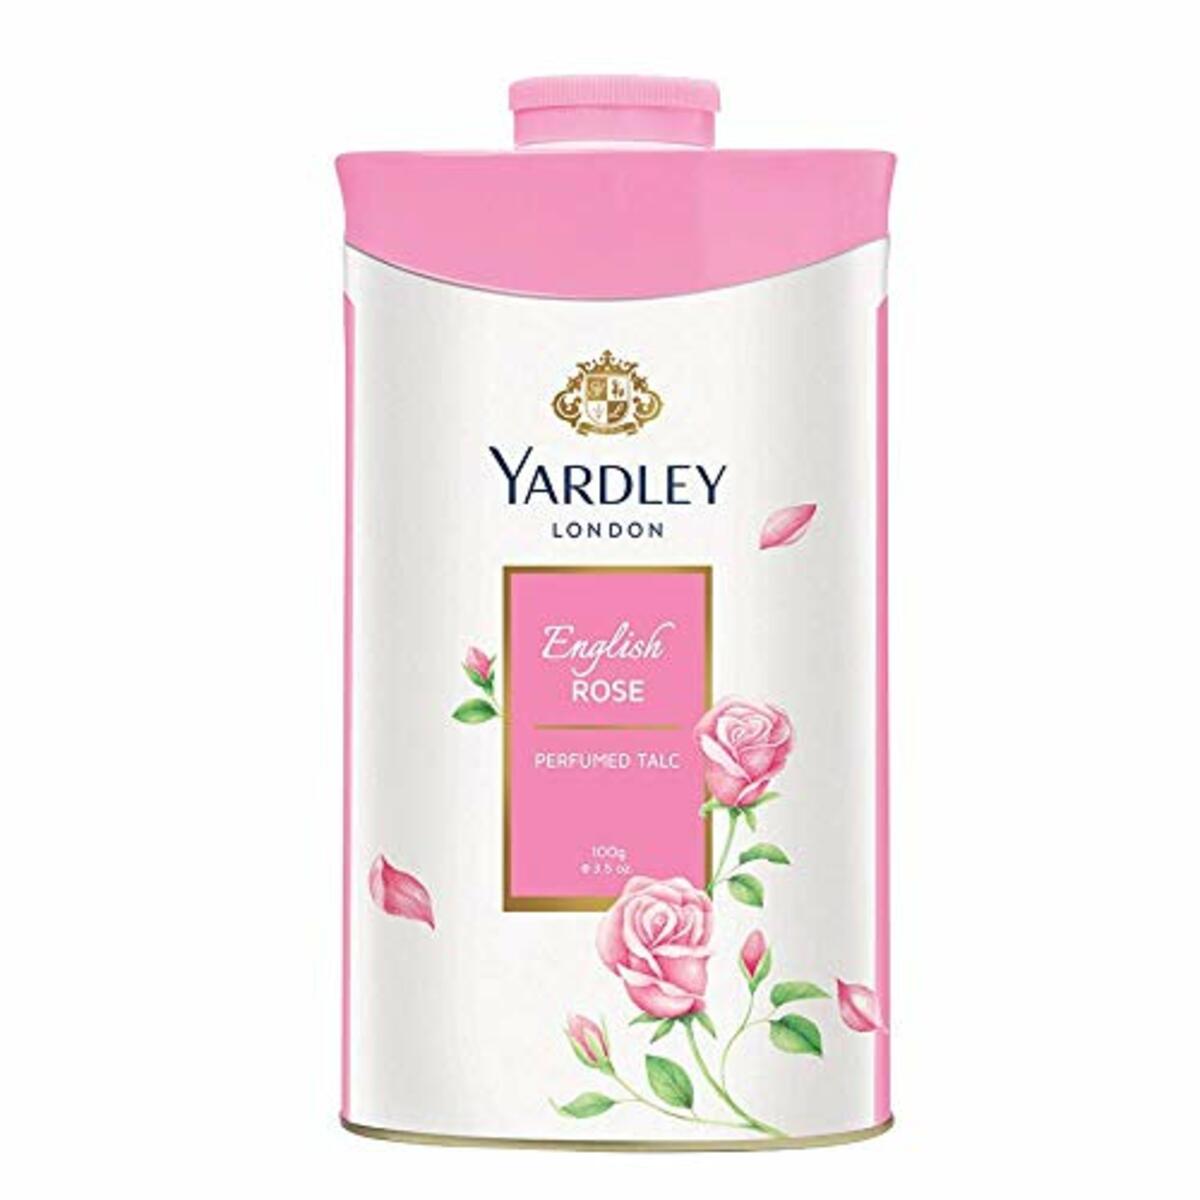 Yardley Talc English Rose 100g